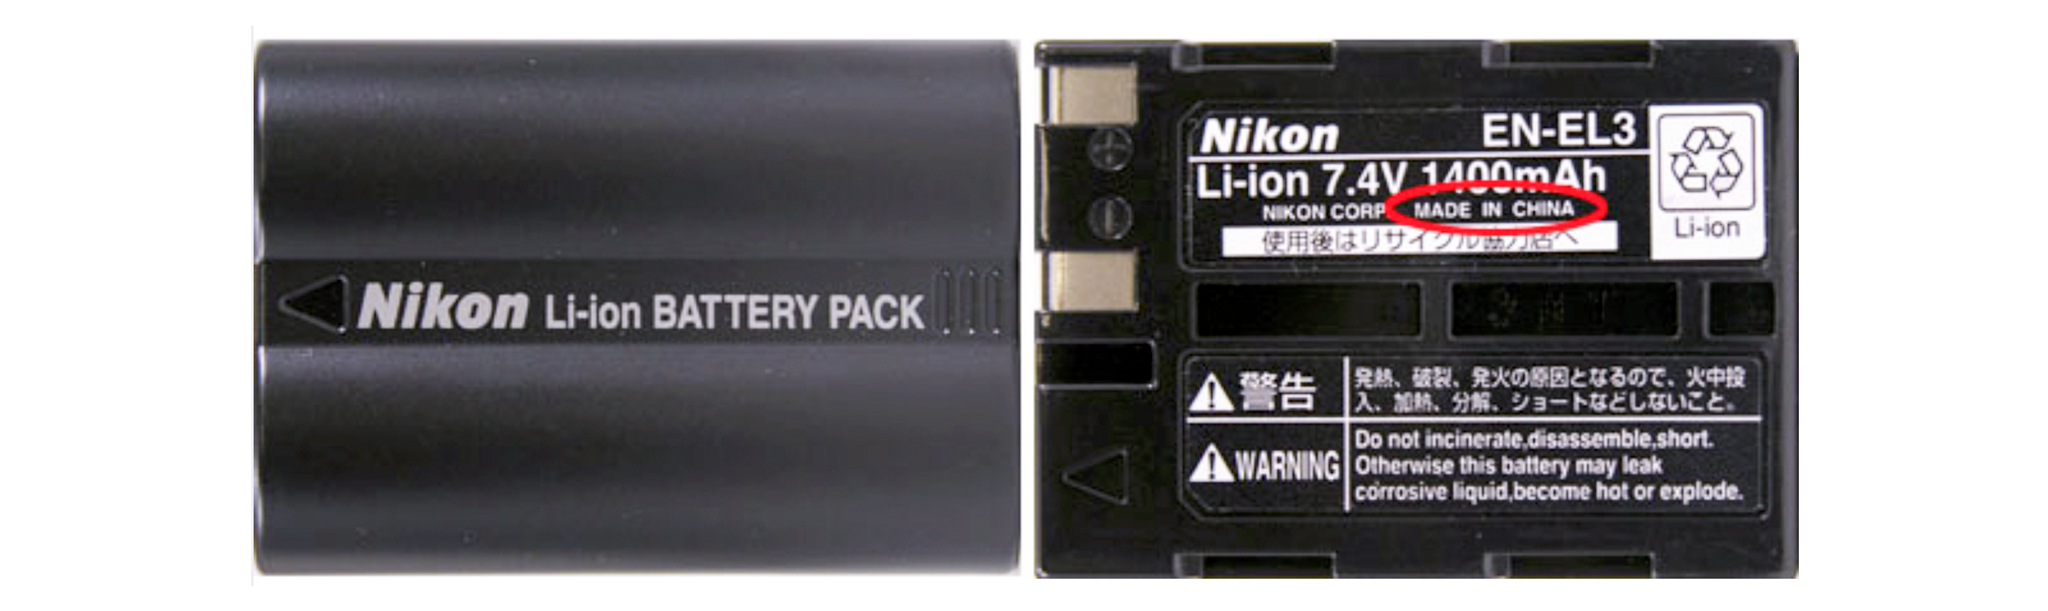 Nikon-EN-EL3e-2.jpg